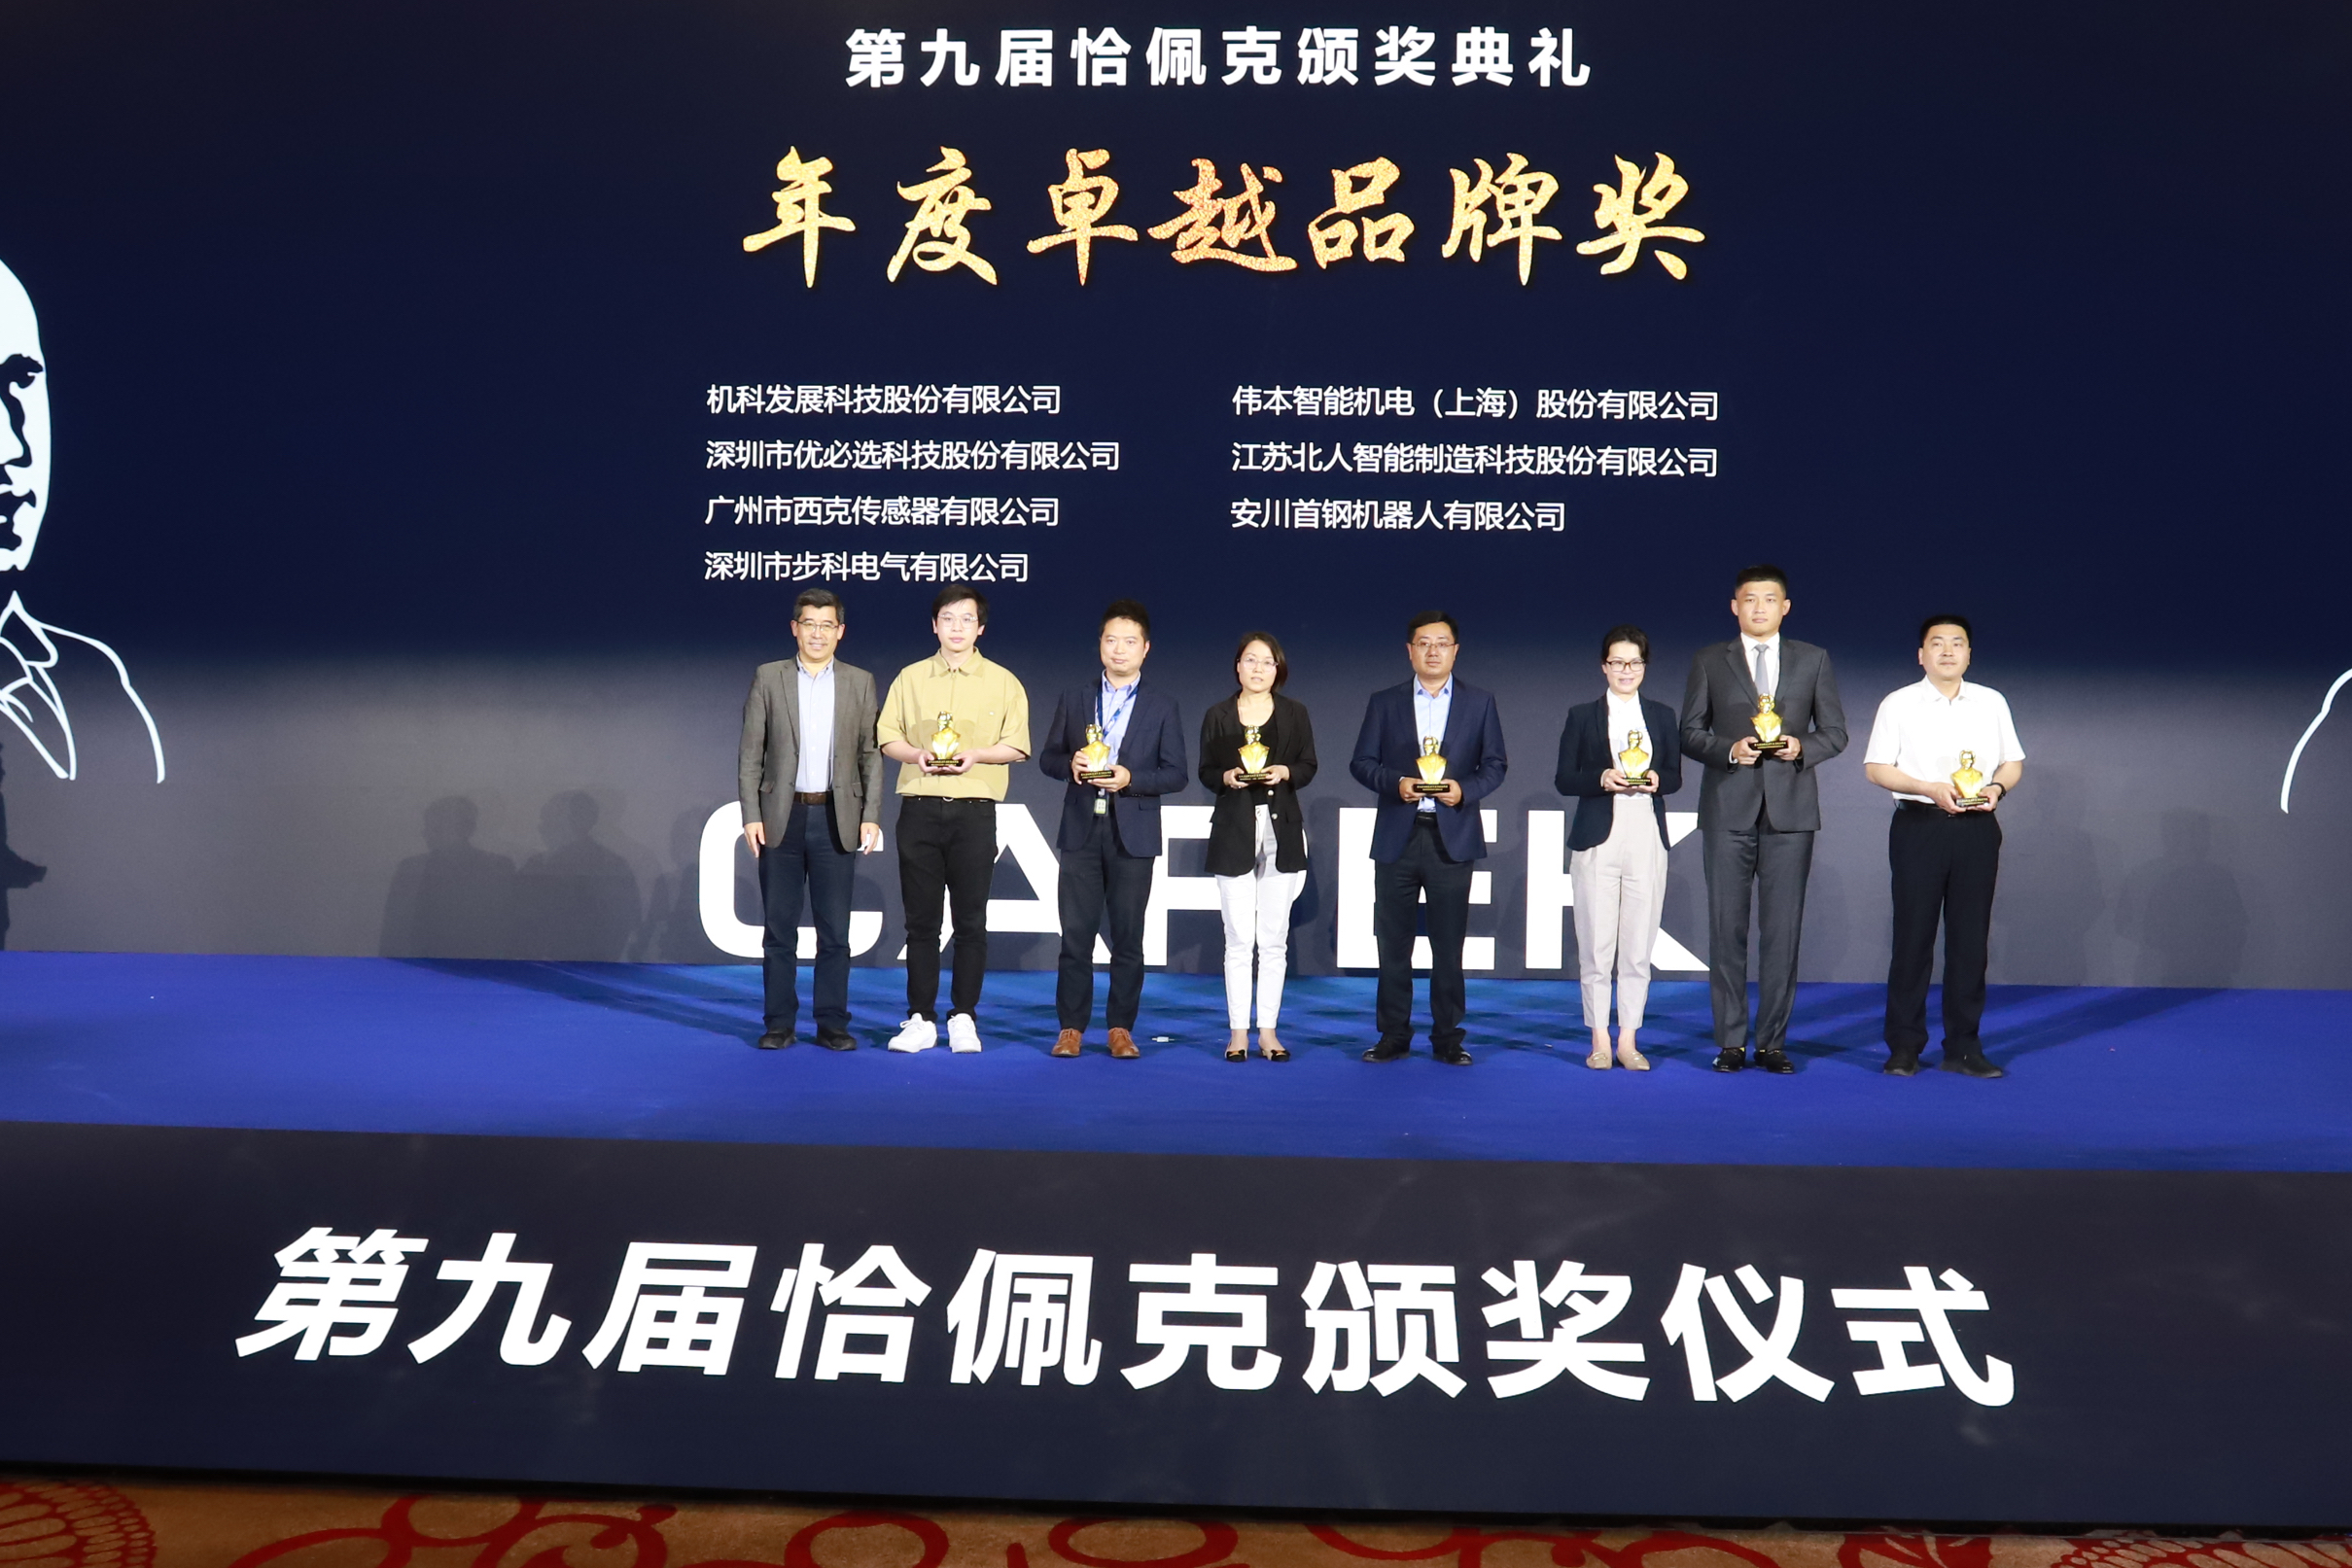 第九屆恰佩克頒獎儀式在皖舉行 蕪湖榮獲8項大獎